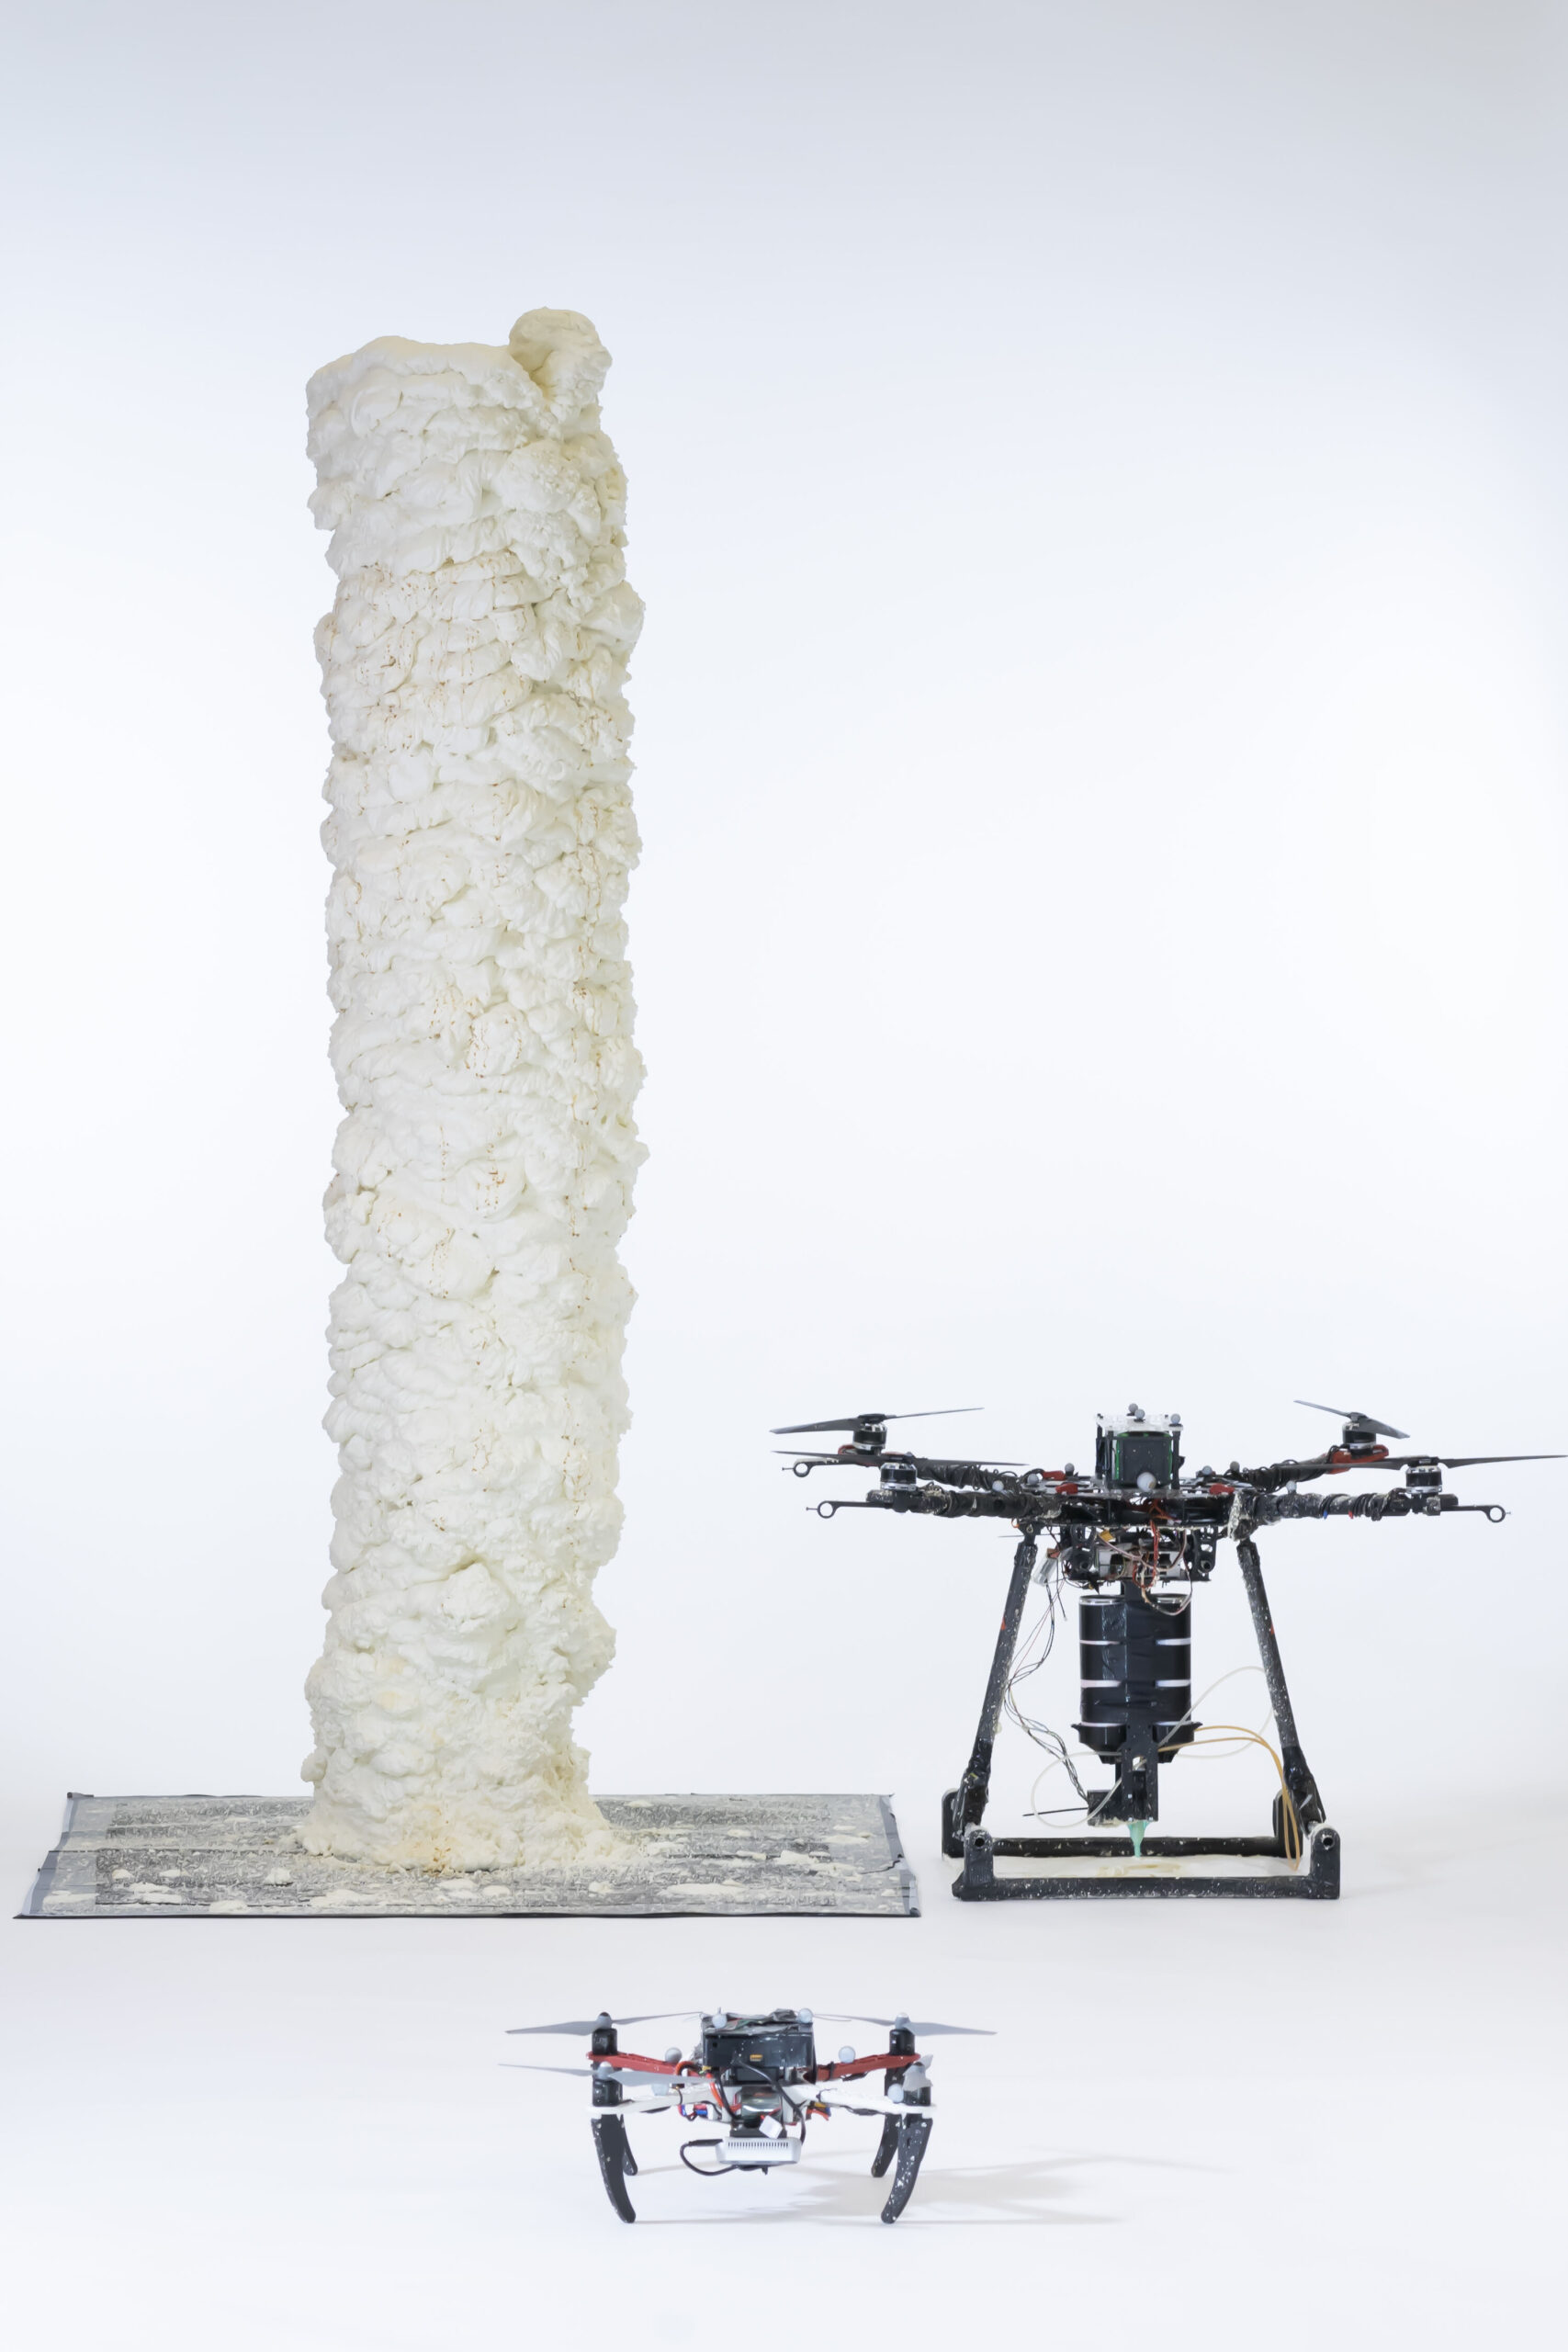 Droni collaborativi: lavoro di squadra: un BuilDrone e uno ScanDrone hanno costruito in 3D una "torre" alta circa due metri usando schiuma a indurimento rapido, che è stata depositata strato dopo strato